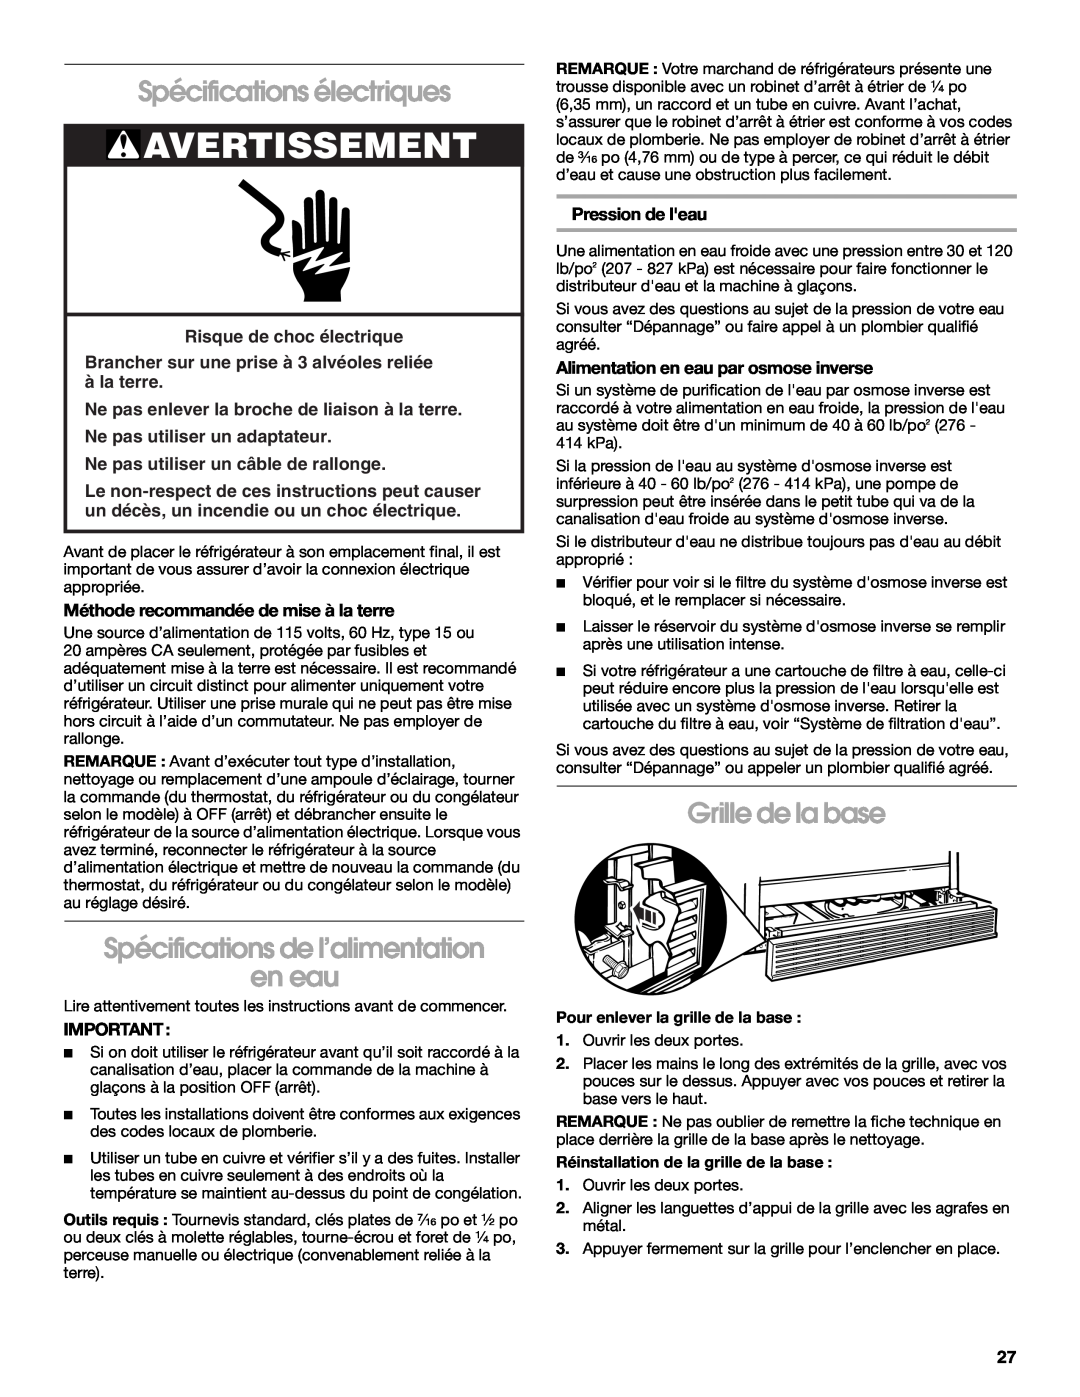 Whirlpool RS22AQXKQ02 manual Spécifications électriques, Spécifications de l’alimentation en eau, Grille de la base 